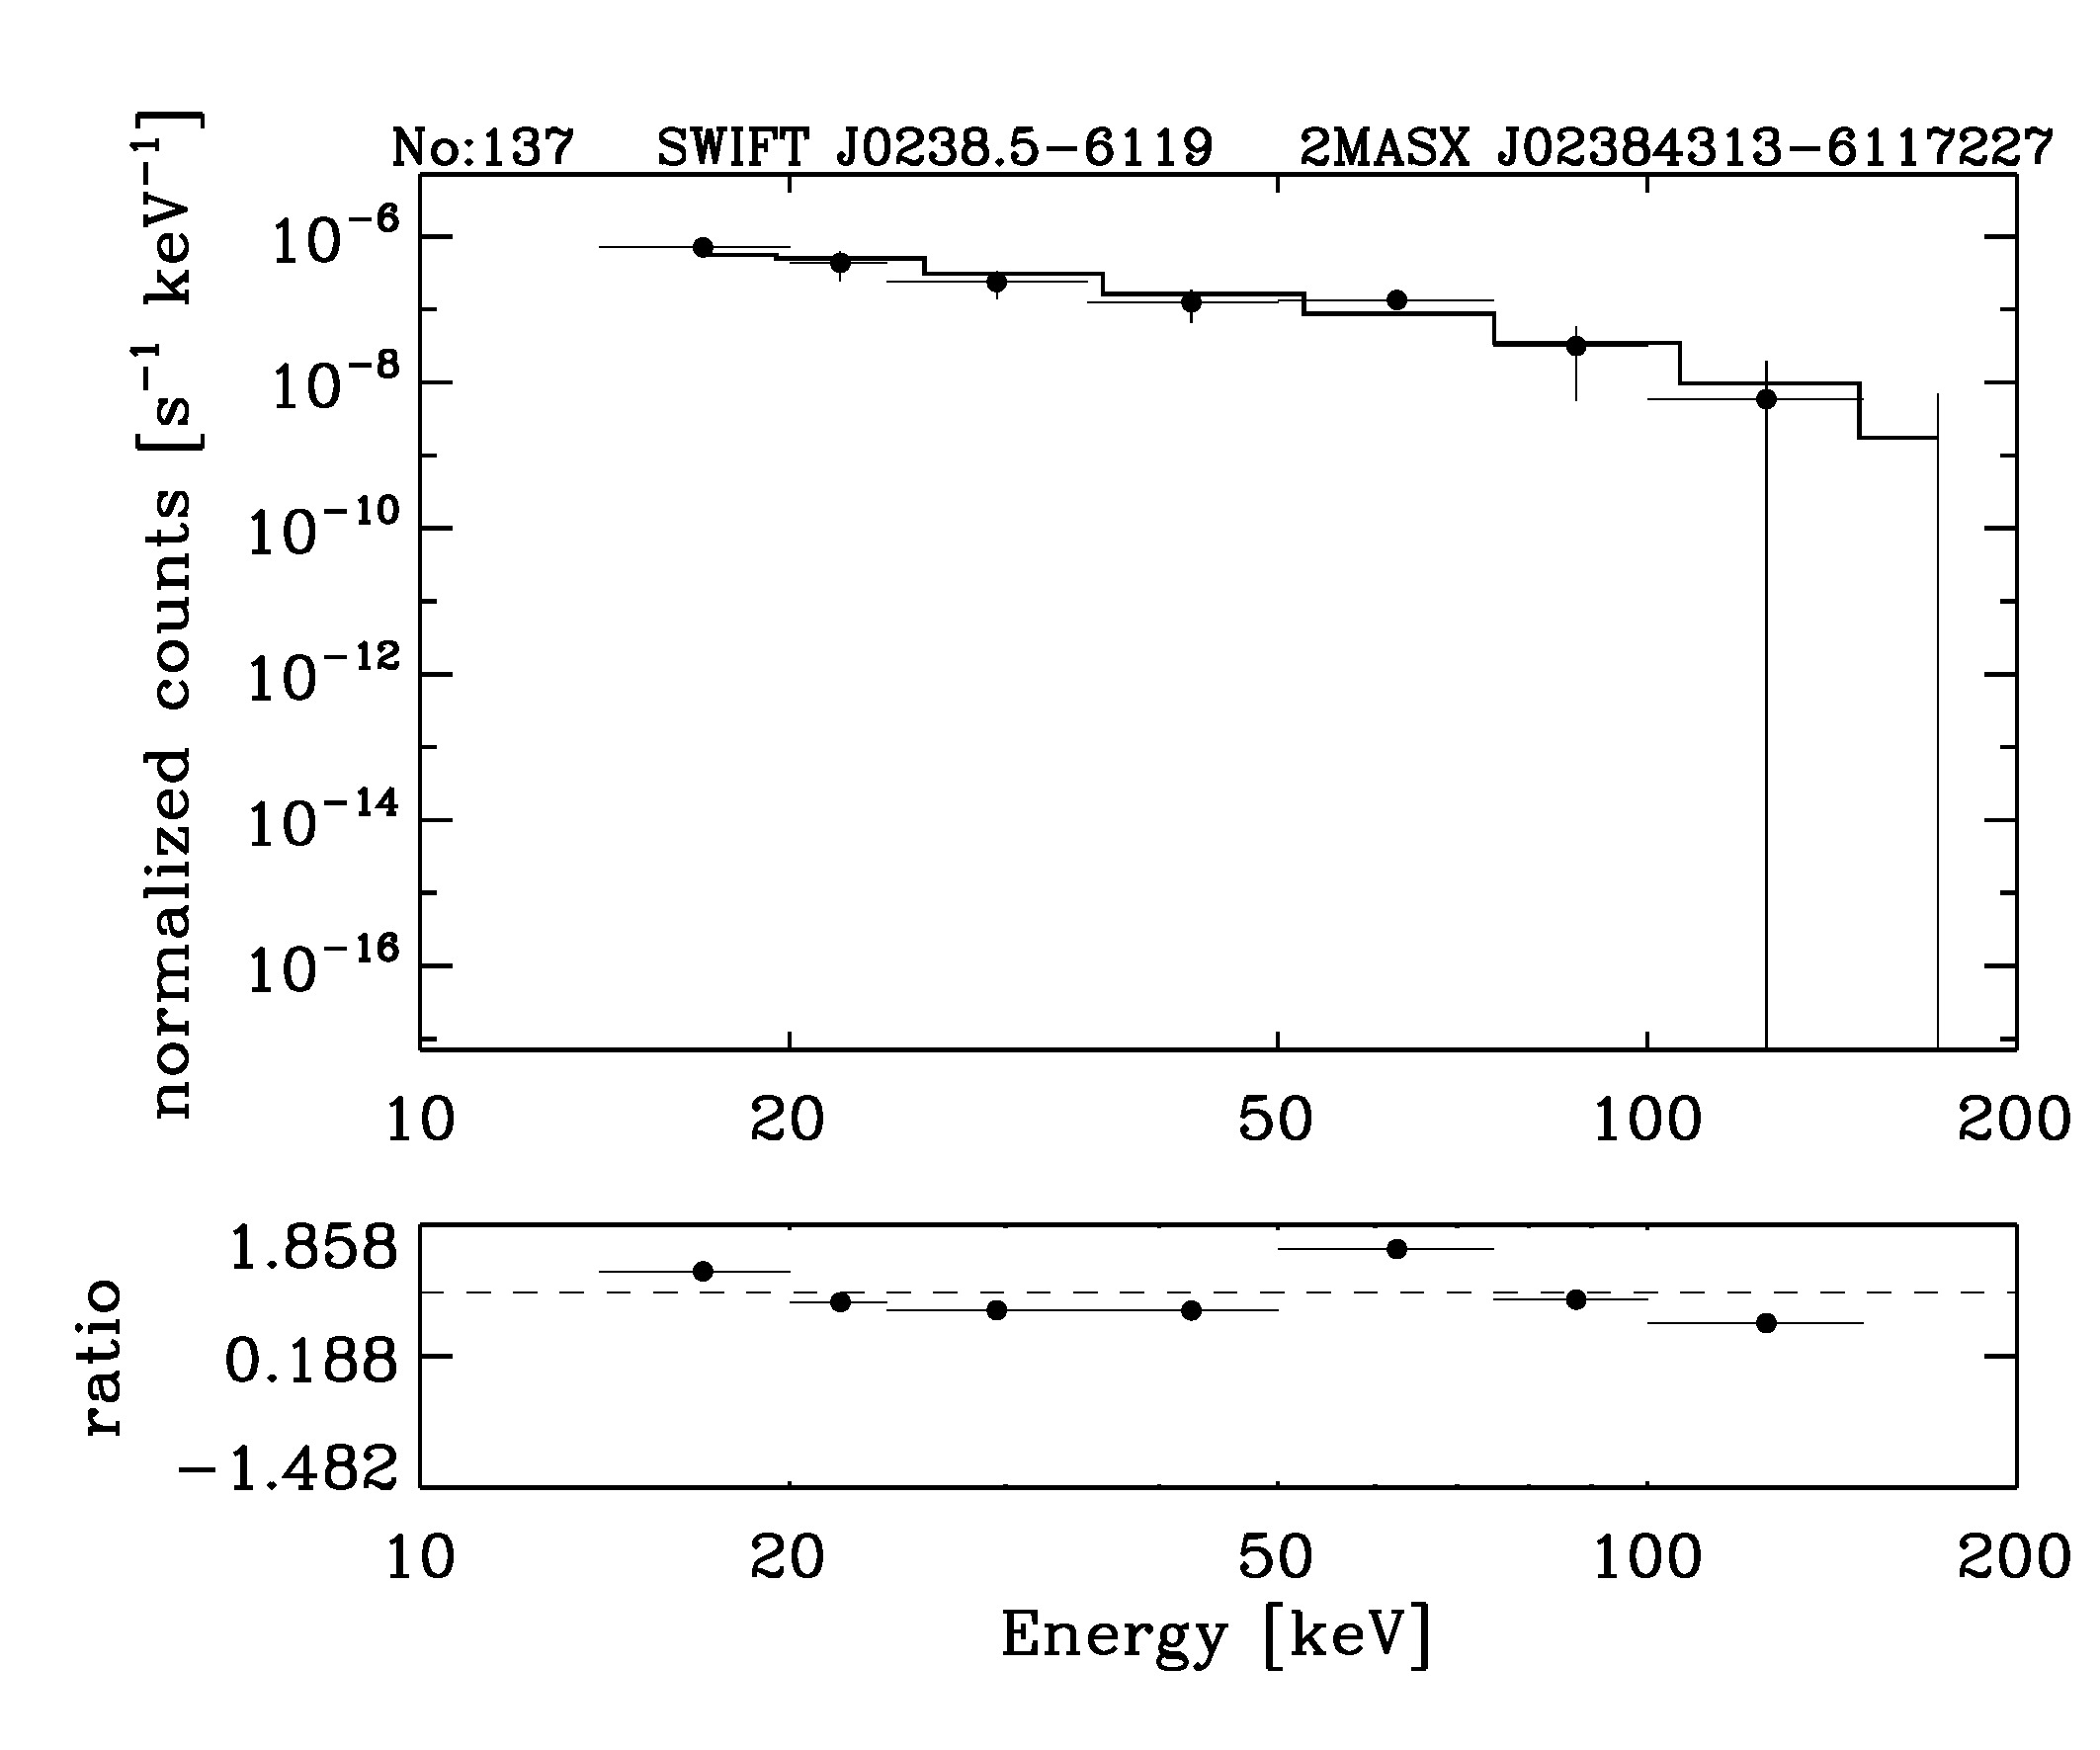 BAT Spectrum for SWIFT J0238.5-6119